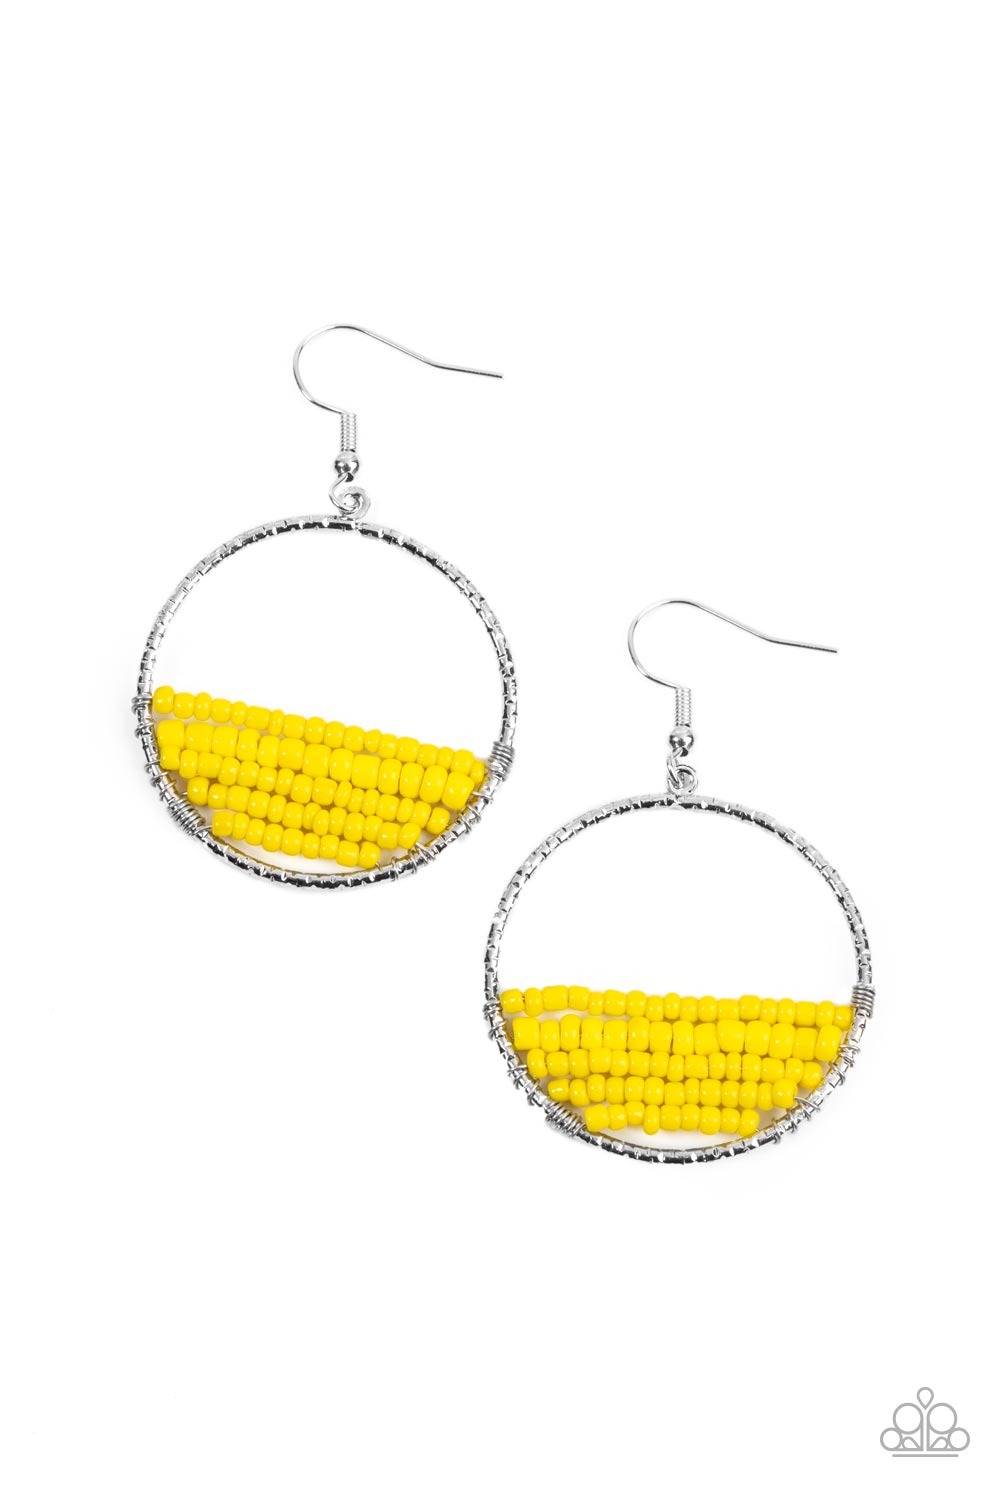 Paparazzi - Head-Over-Horizons - Yellow Earrings - Alies Bling Bar